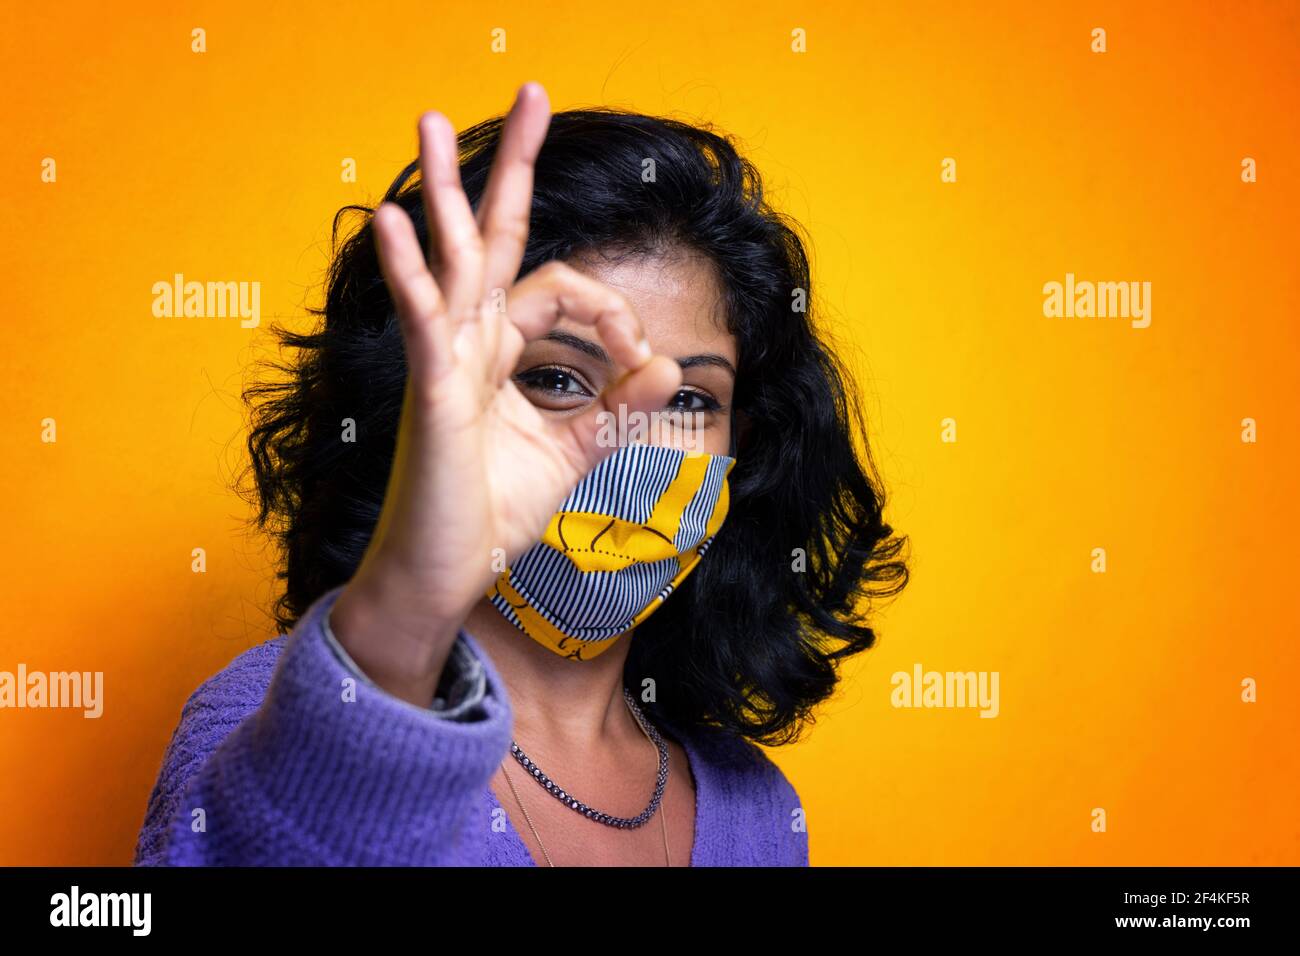 Belle jeune femme indienne posant avec la protection de masque de covid 19 - la jolie fille Sri Lanka utilise la protection contre les flux de grippe pandémique Banque D'Images